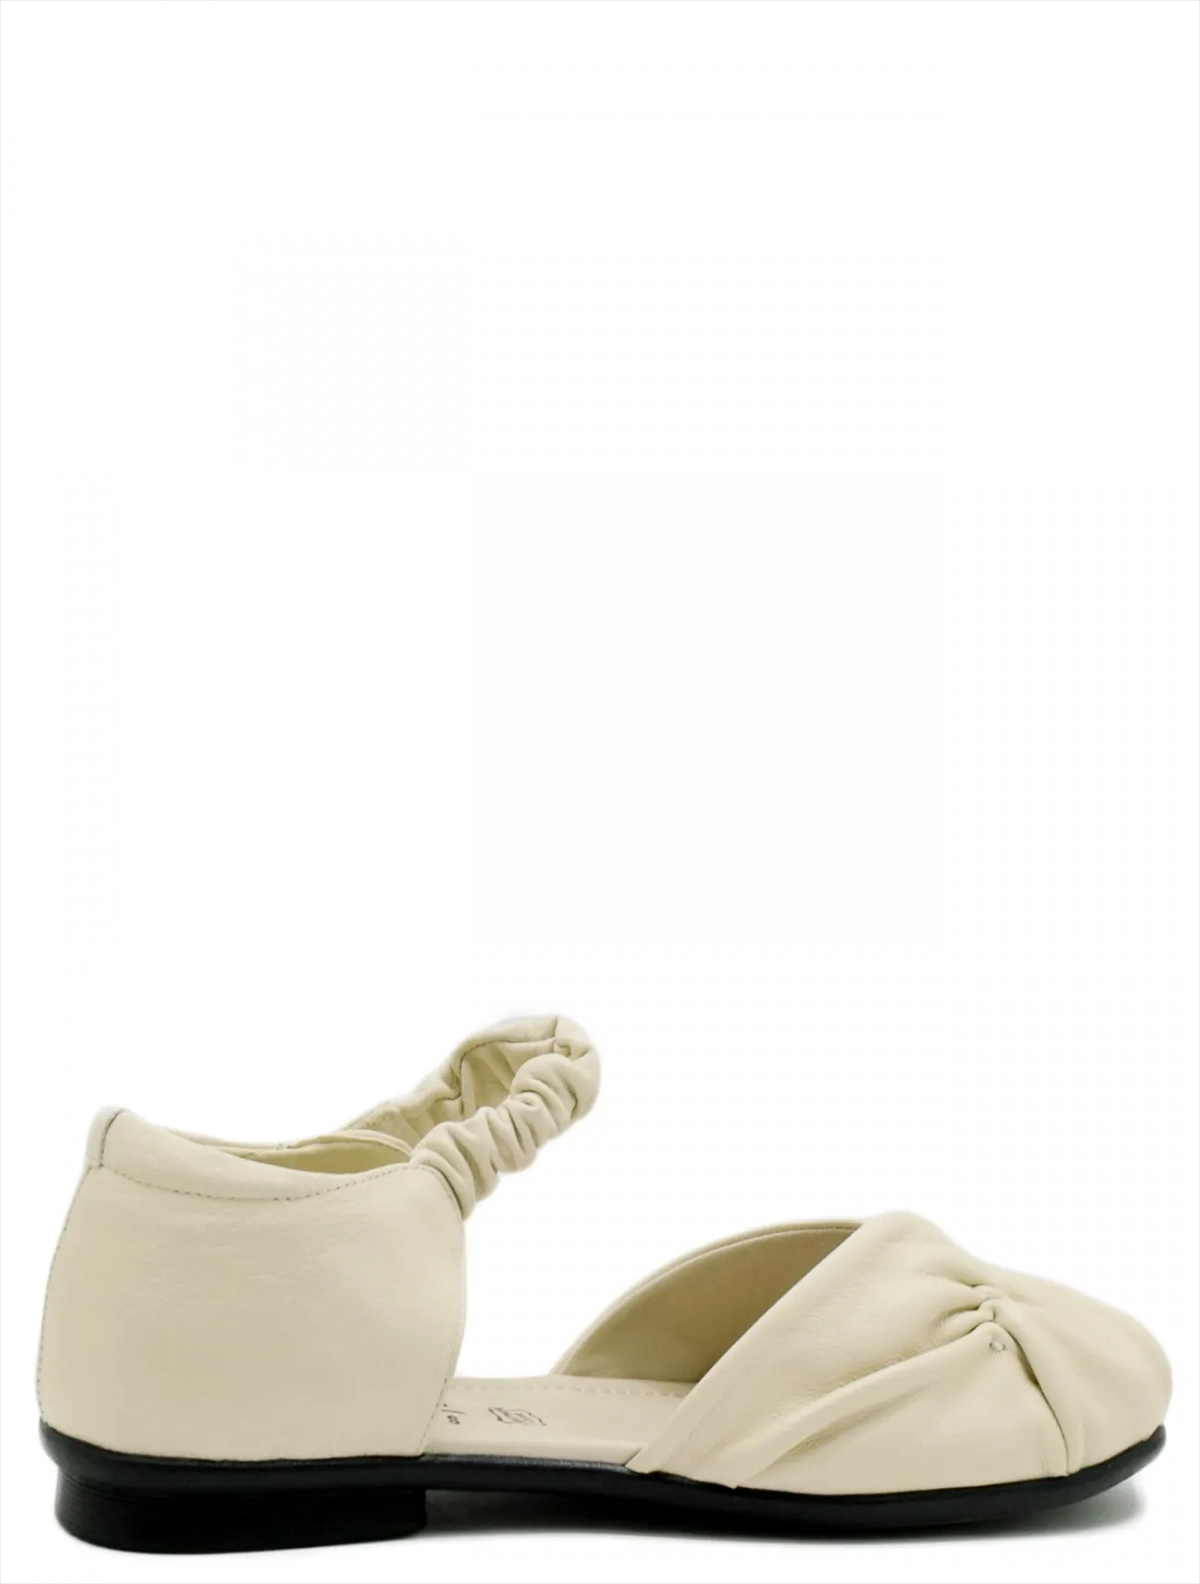 Baden RJ042-011 женские туфли